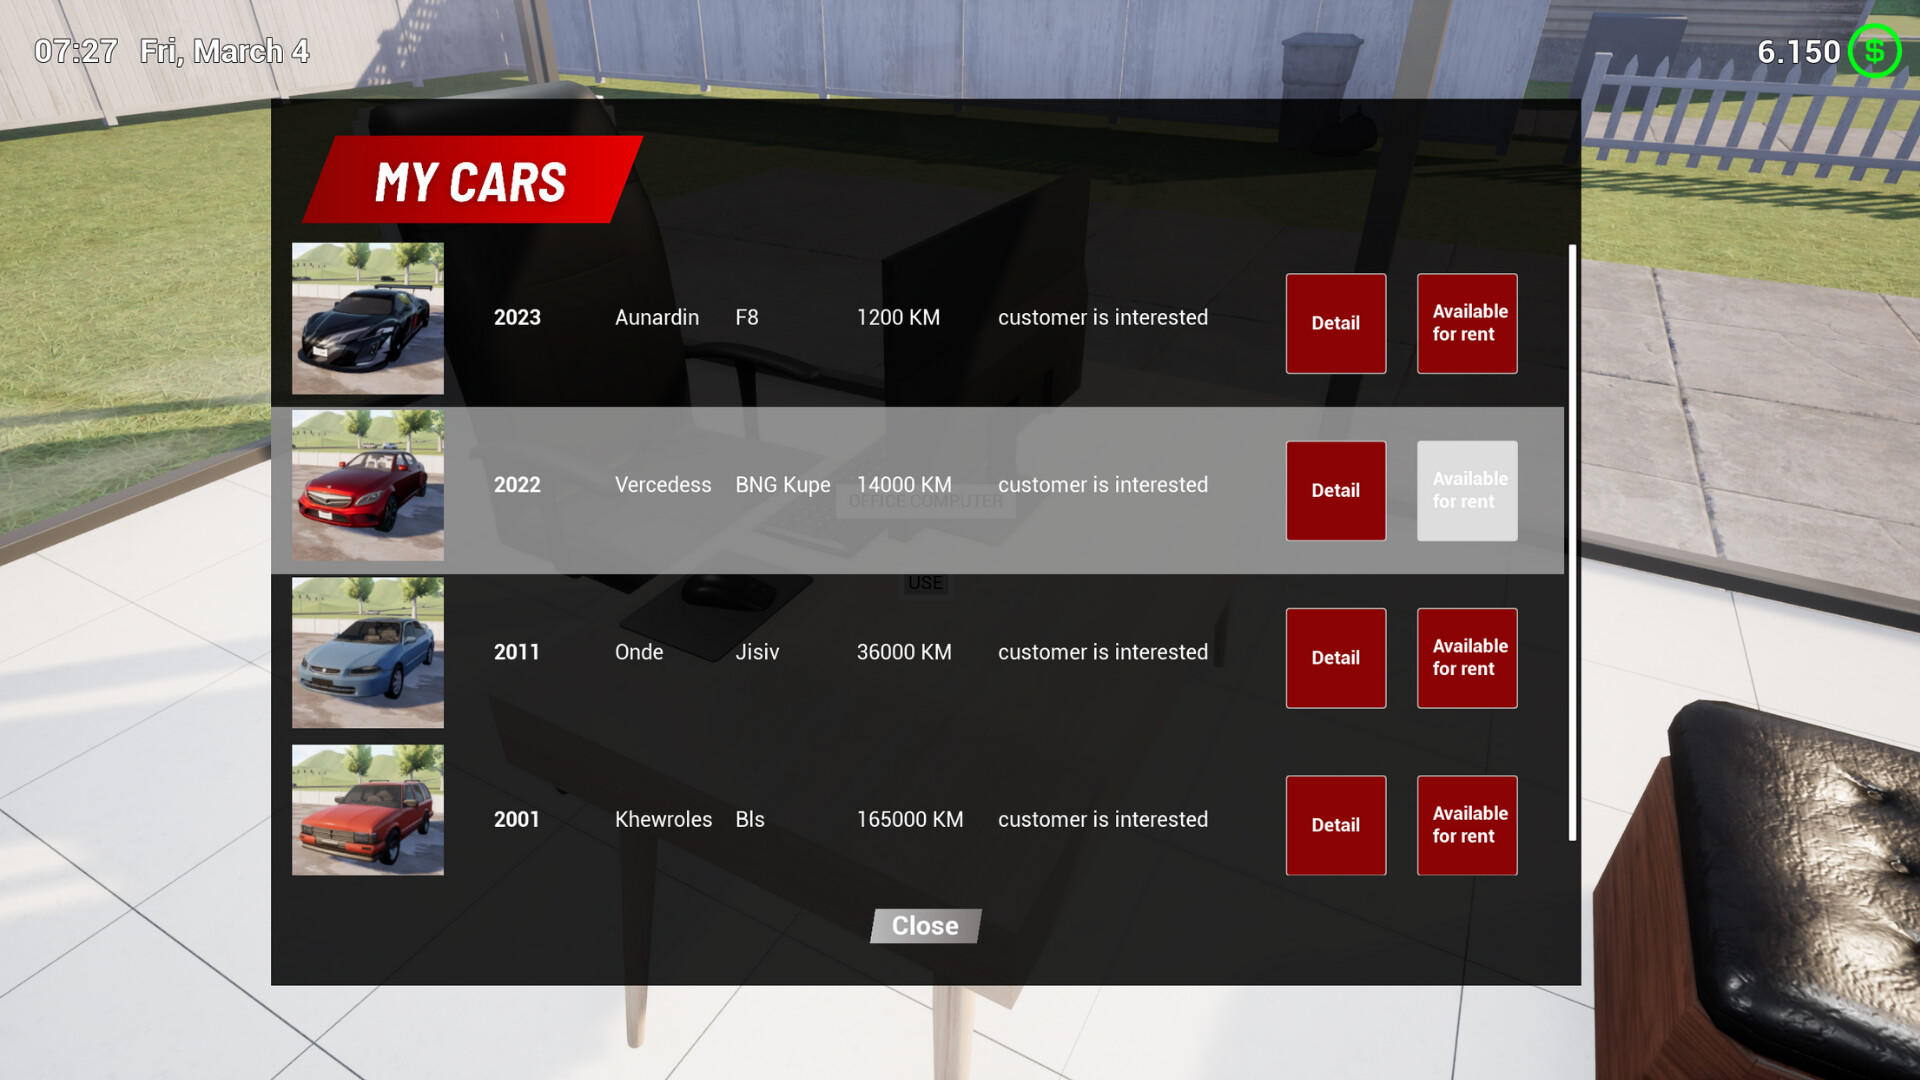 Rent A Car Simulator 24 screenshot game